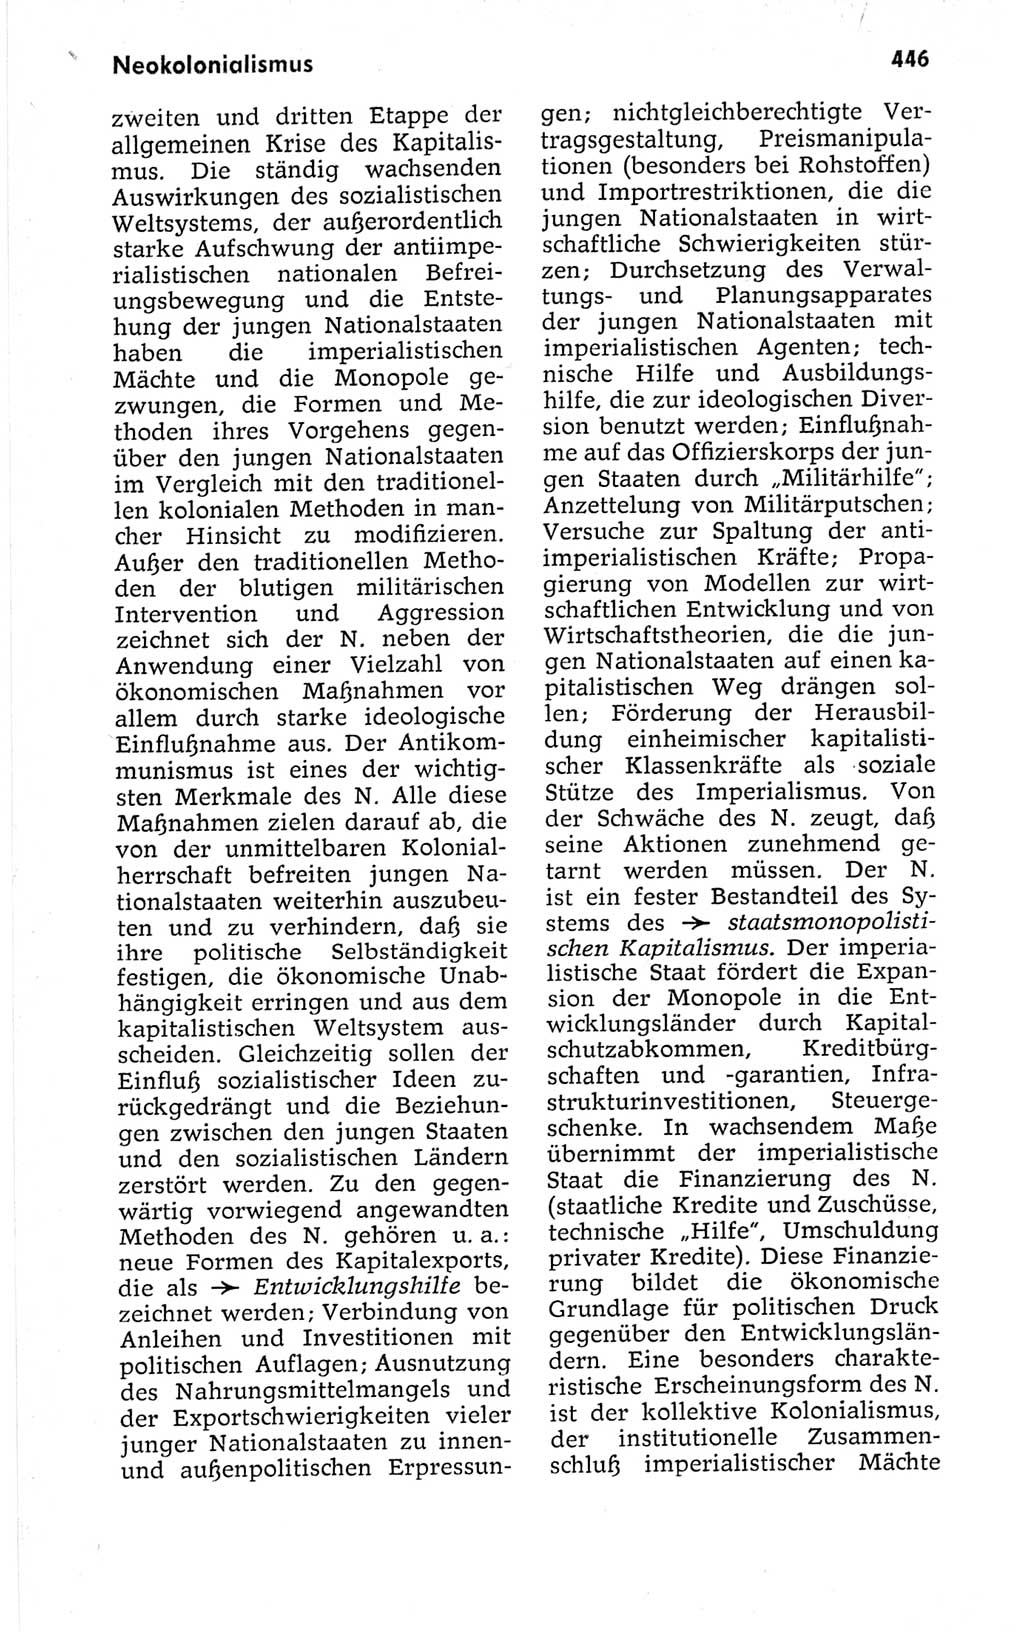 Kleines politisches Wörterbuch [Deutsche Demokratische Republik (DDR)] 1967, Seite 446 (Kl. pol. Wb. DDR 1967, S. 446)